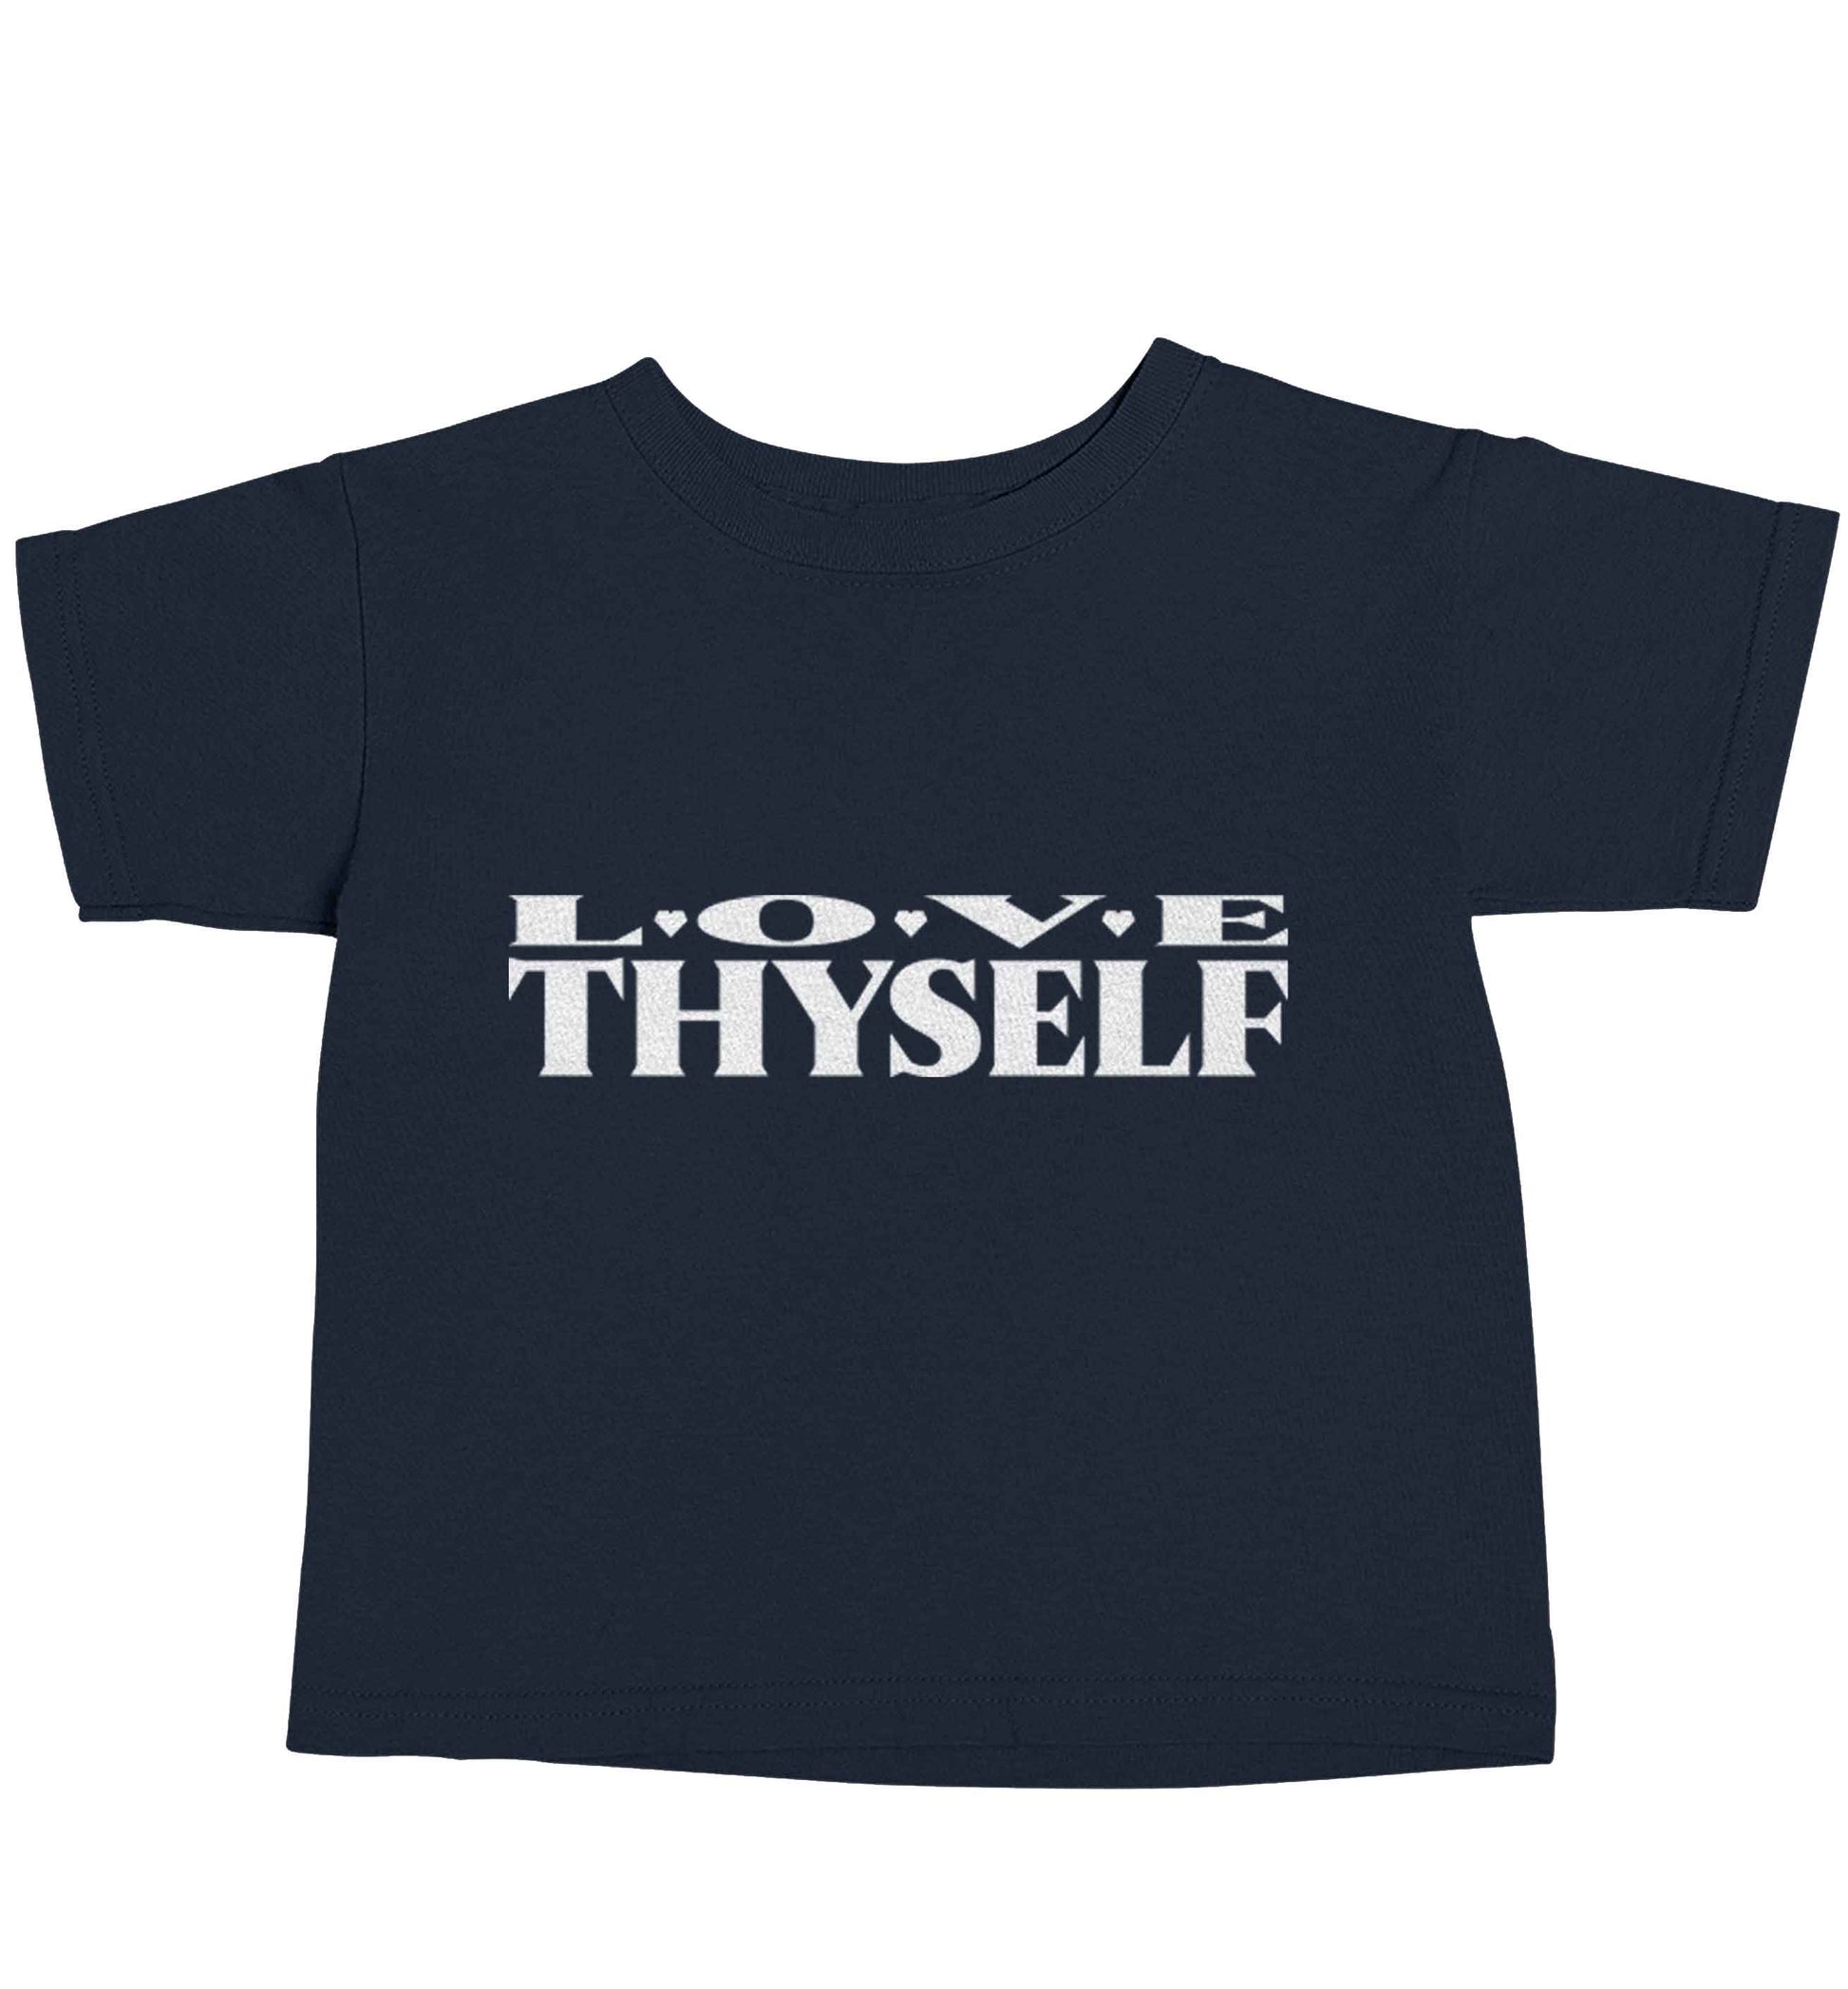 Love thyself navy baby toddler Tshirt 2 Years